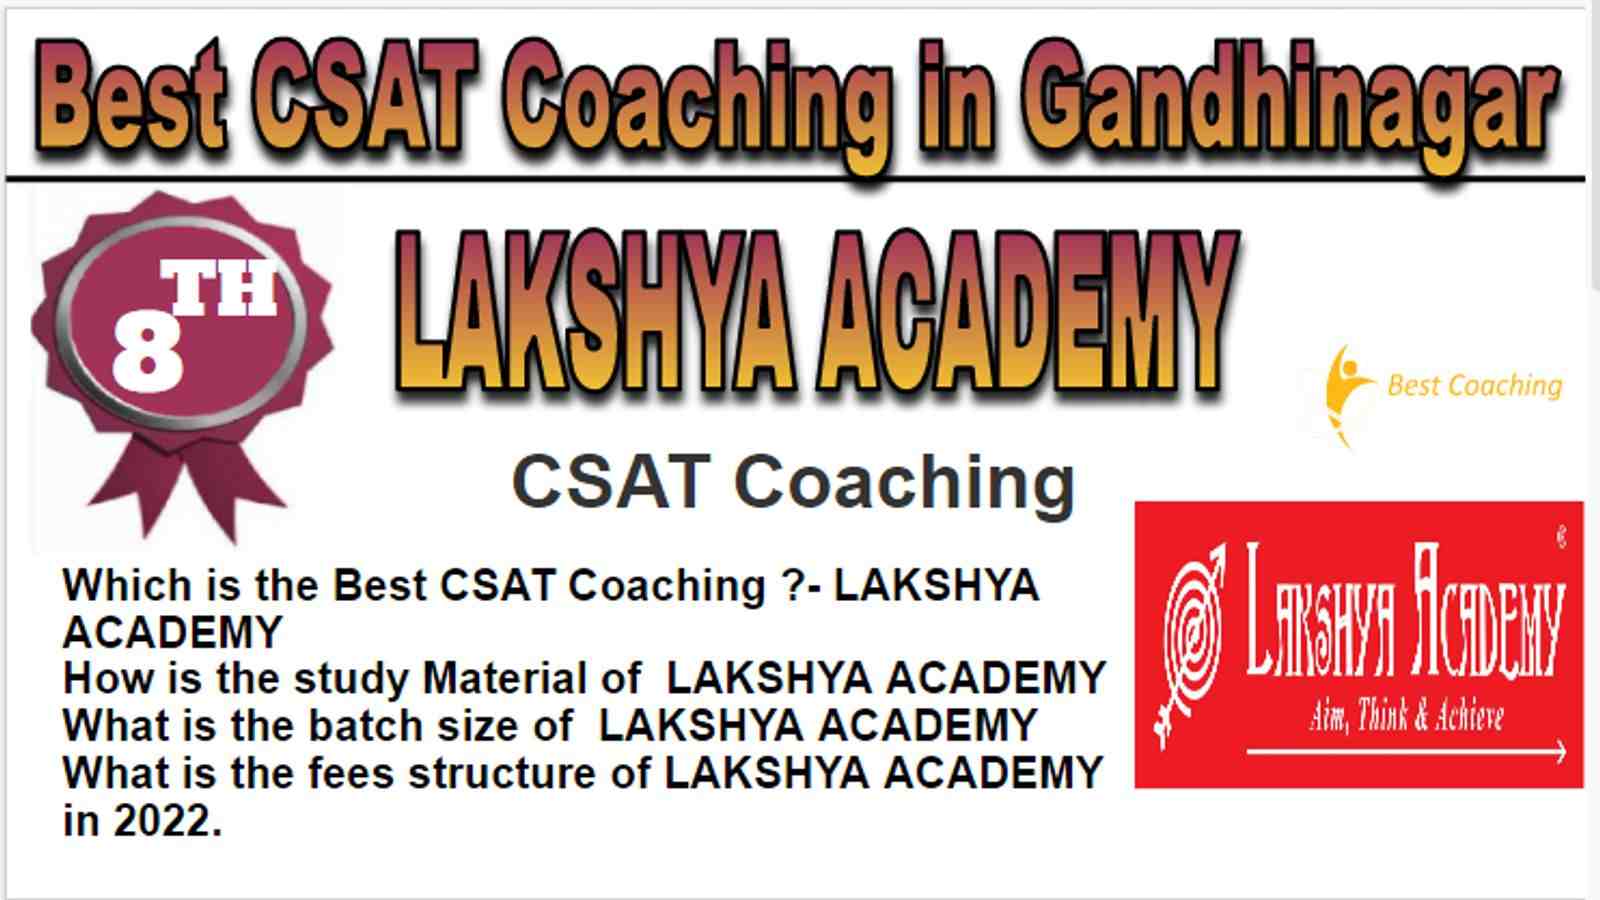 Rank 8 Best CSAT Coaching in Gandhinagar